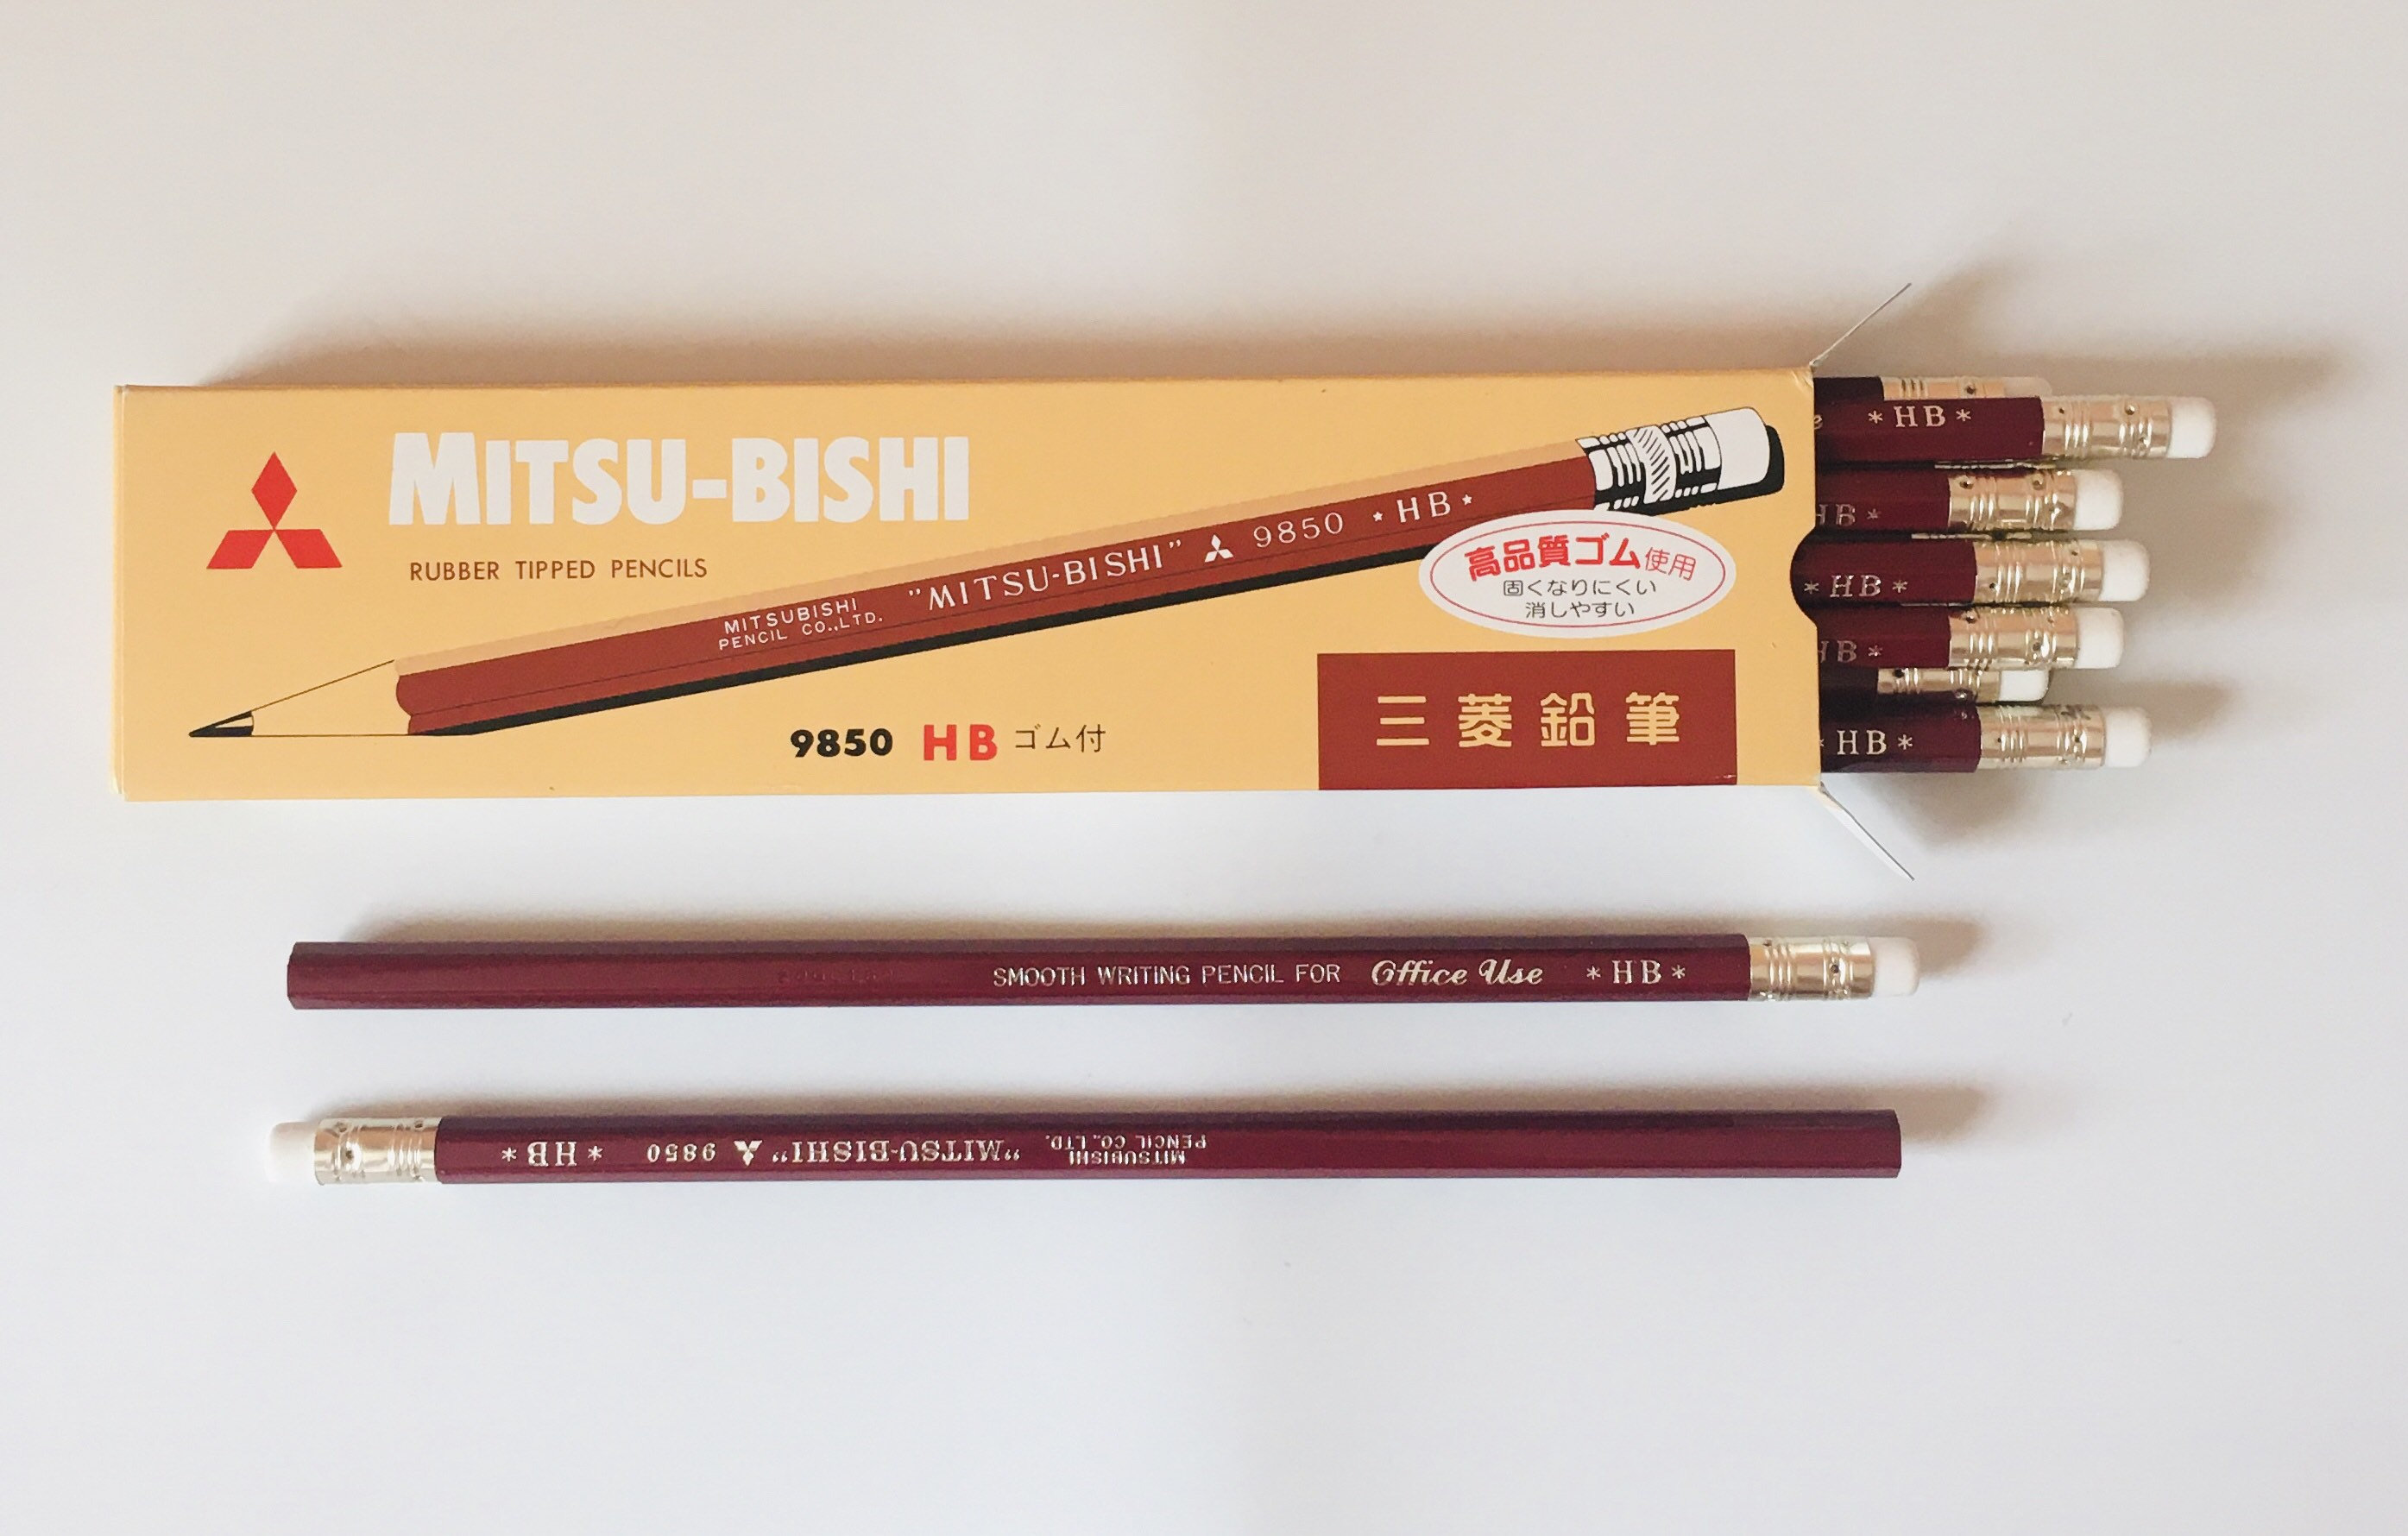 Sakura Gelly Roll Pen Metallic Choose Your Color 0.4mm Gel Ink